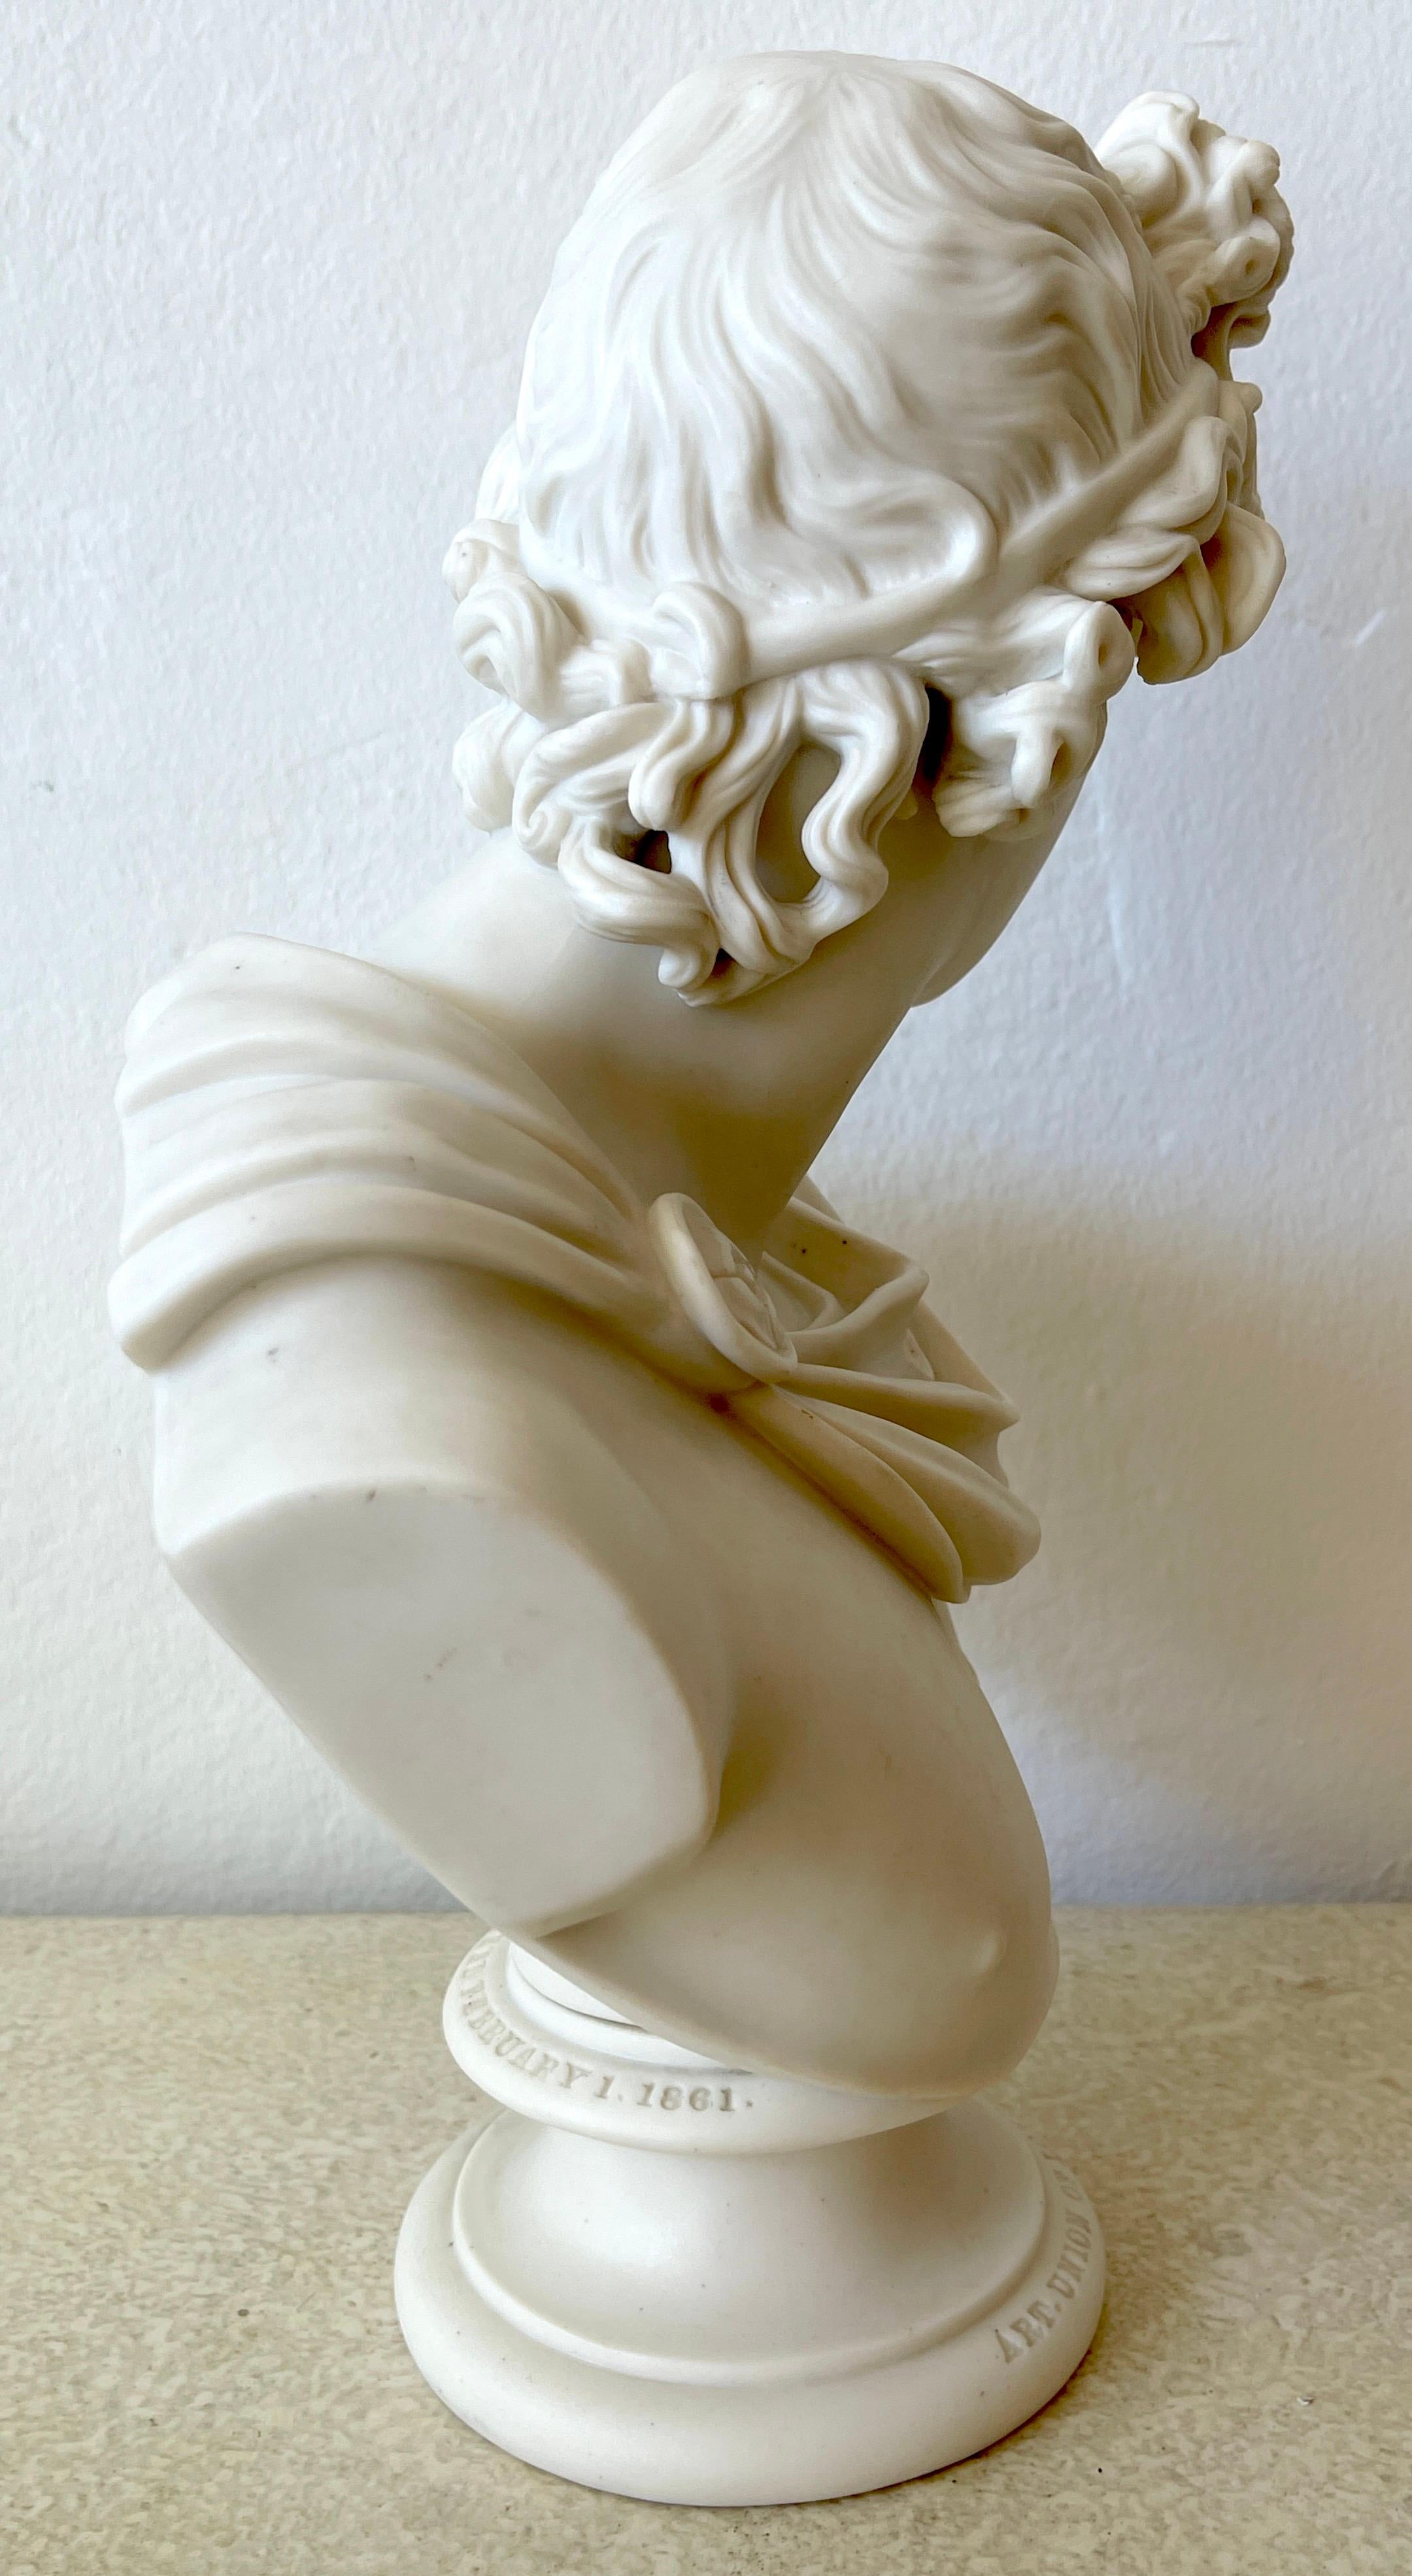 Porcelain Art Union of London Parian Bust of Apollo Belvedere, by C. Delpech, 1861